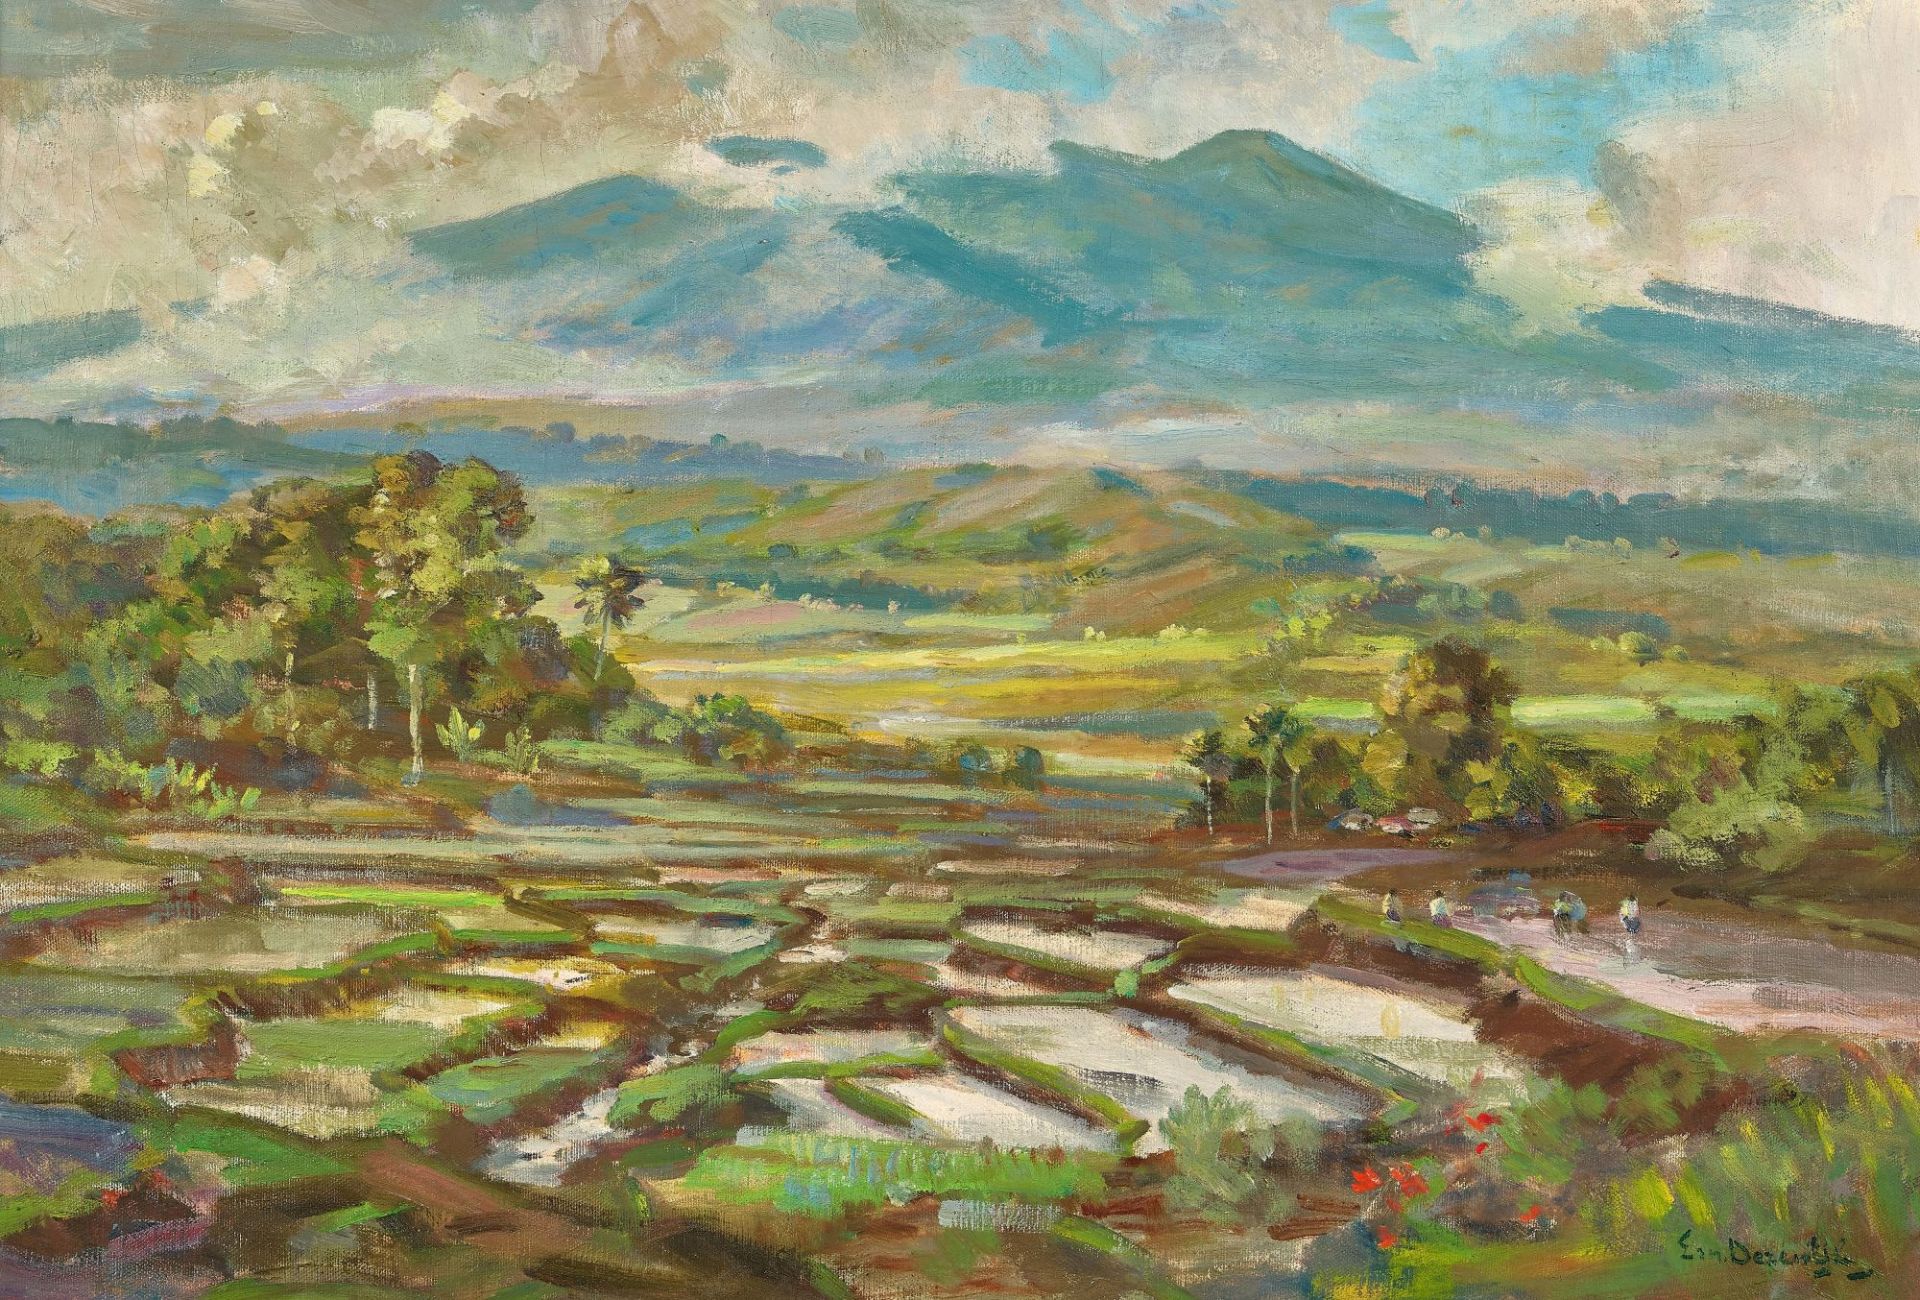 DEZENTHÉ, ERNEST: Indonesische Landschaft mit Reisfeldern.